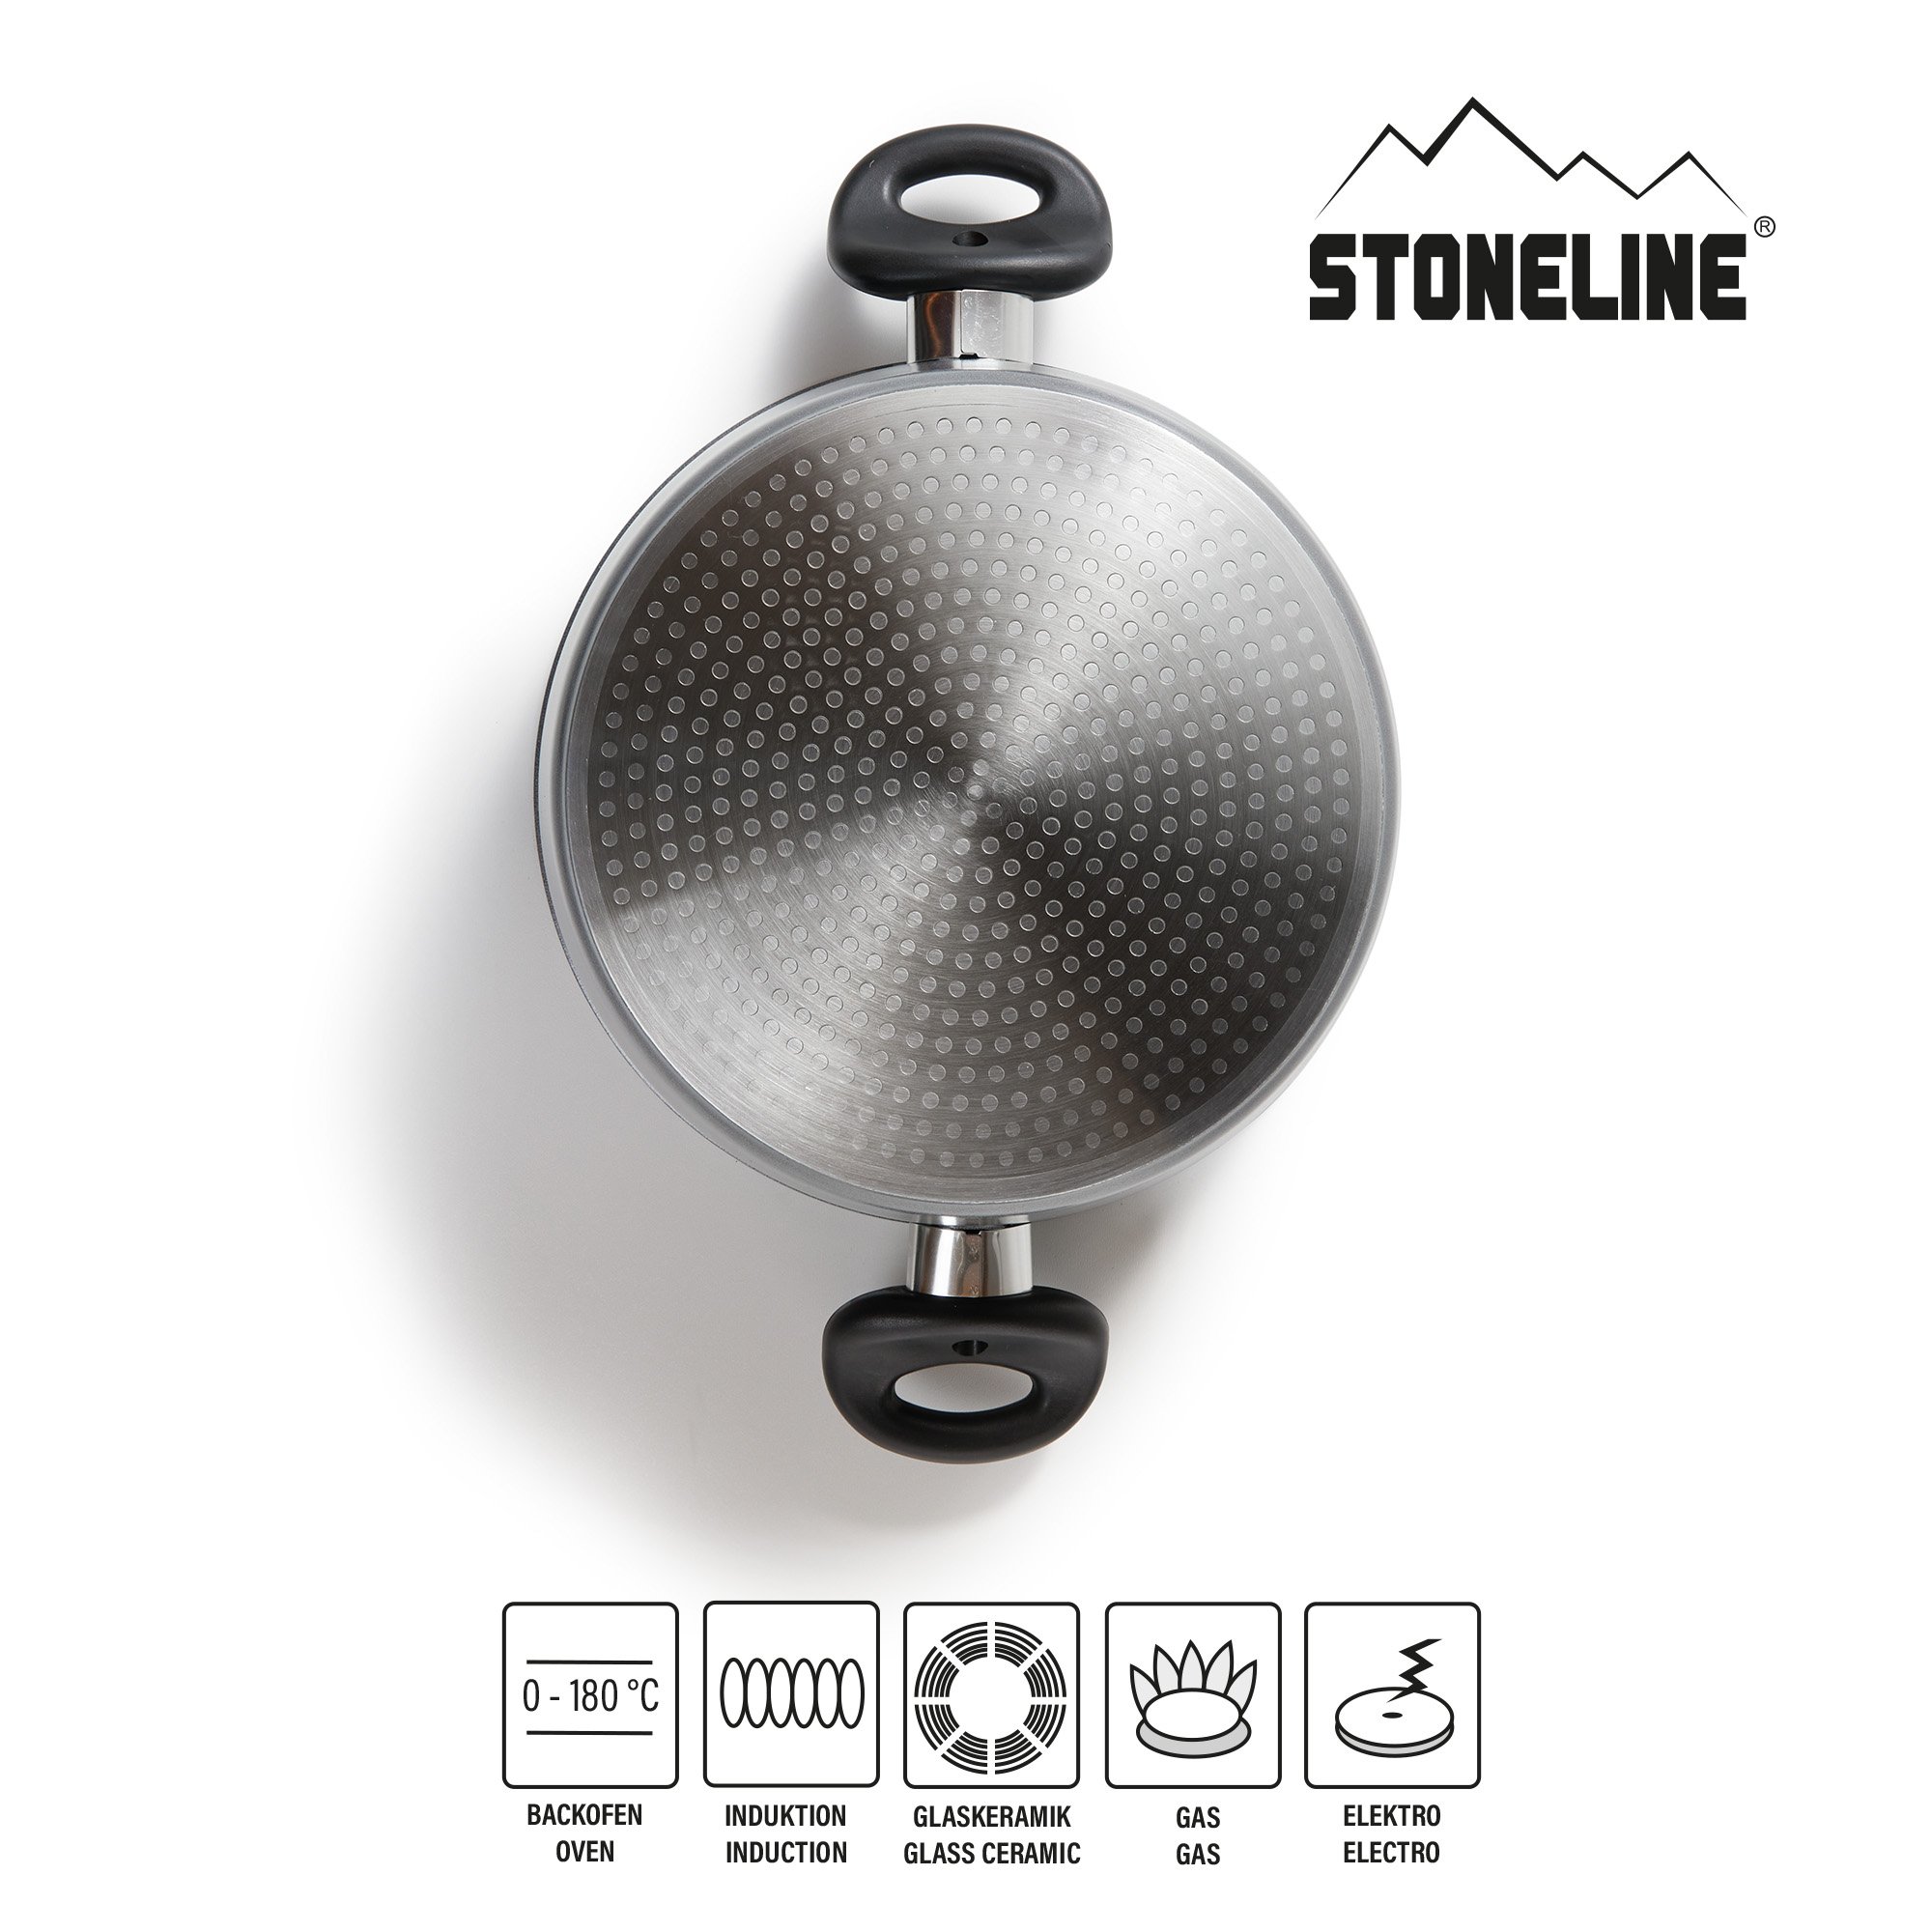 STONELINE® cacerola 18 cm, con tapa de cristal, antiadherente, apta para inducción y horno